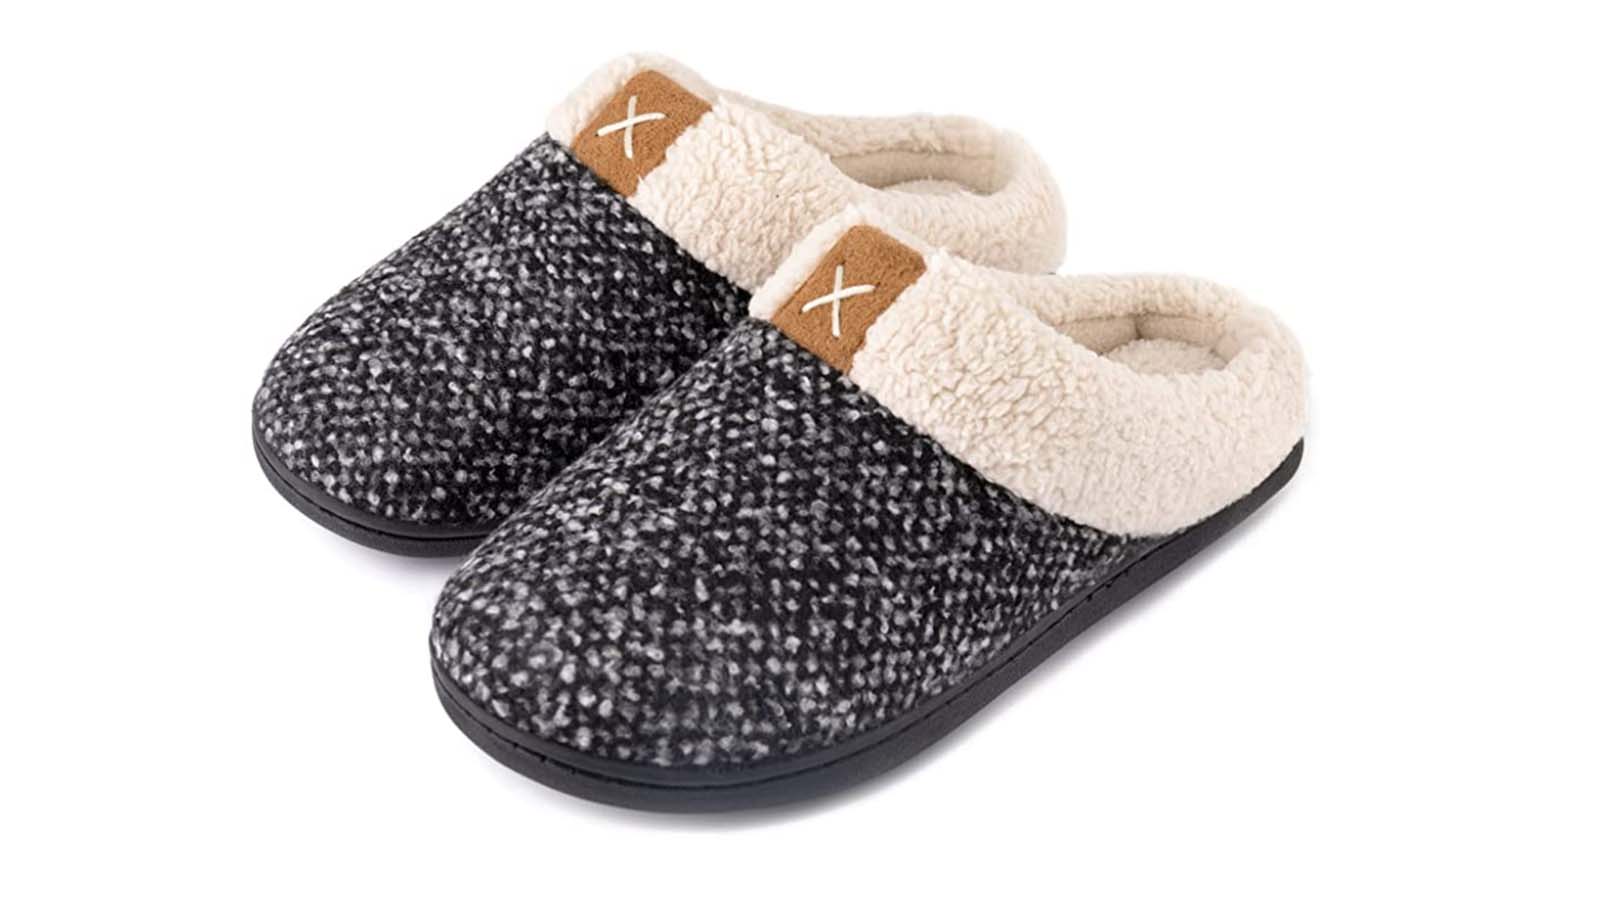 Beknopt Gemaakt om te onthouden demonstratie Best slippers for women and men: Cozy and warm | CNN Underscored